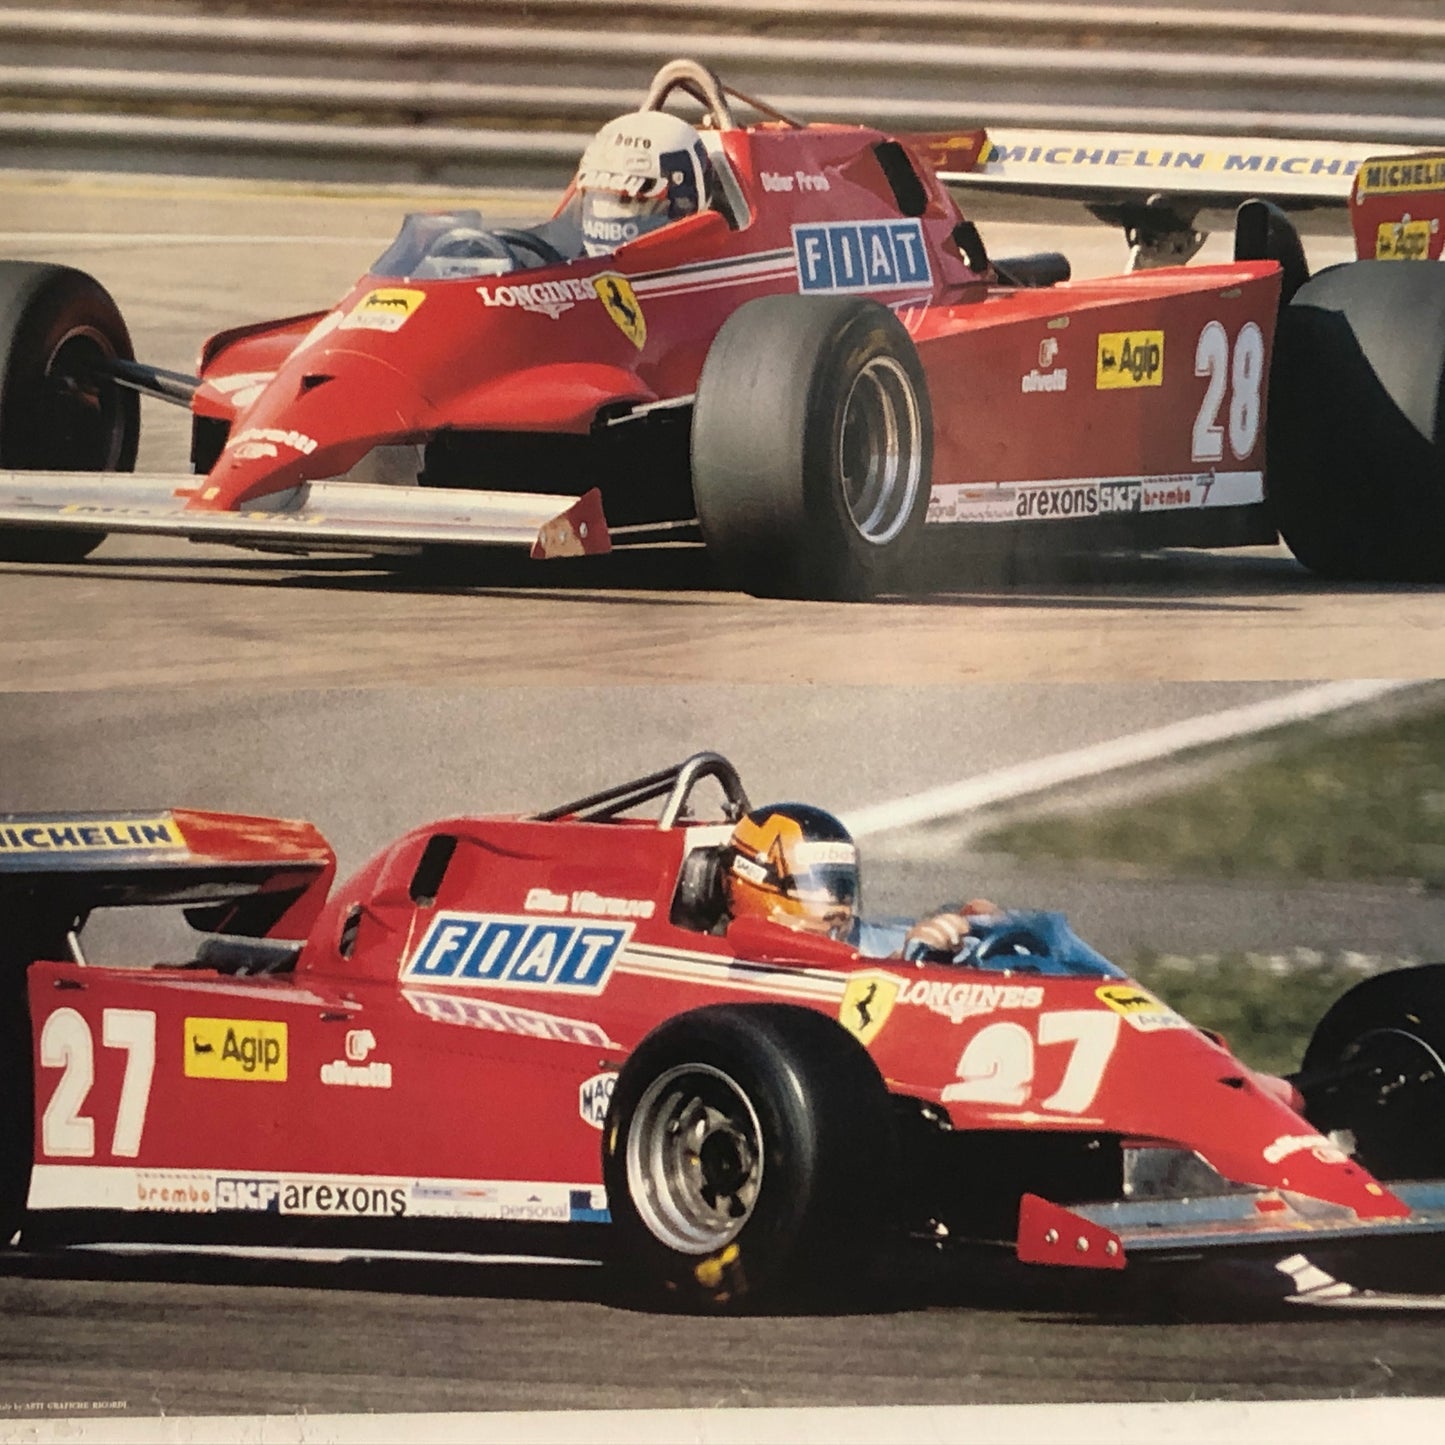 Ferrari Poster Ferrari 126 CX - CK con Gilles Villeneuve e Didier Pironi Anni 70